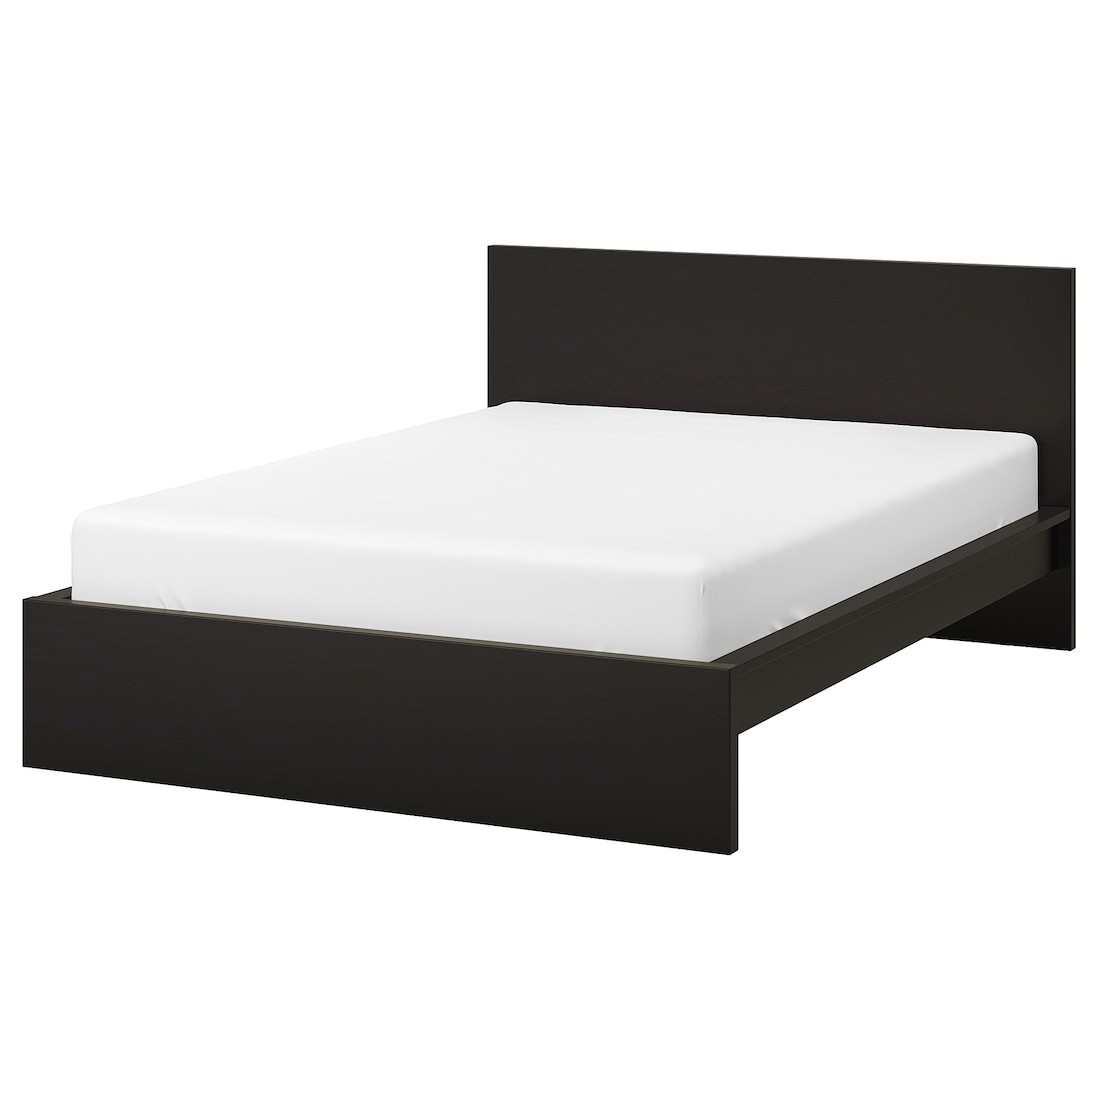 IKEA MALM МАЛЬМ Кровать двуспальная, высокий, черно-коричневый / Lindbåden, 160x200 см 39494963 | 394.949.63